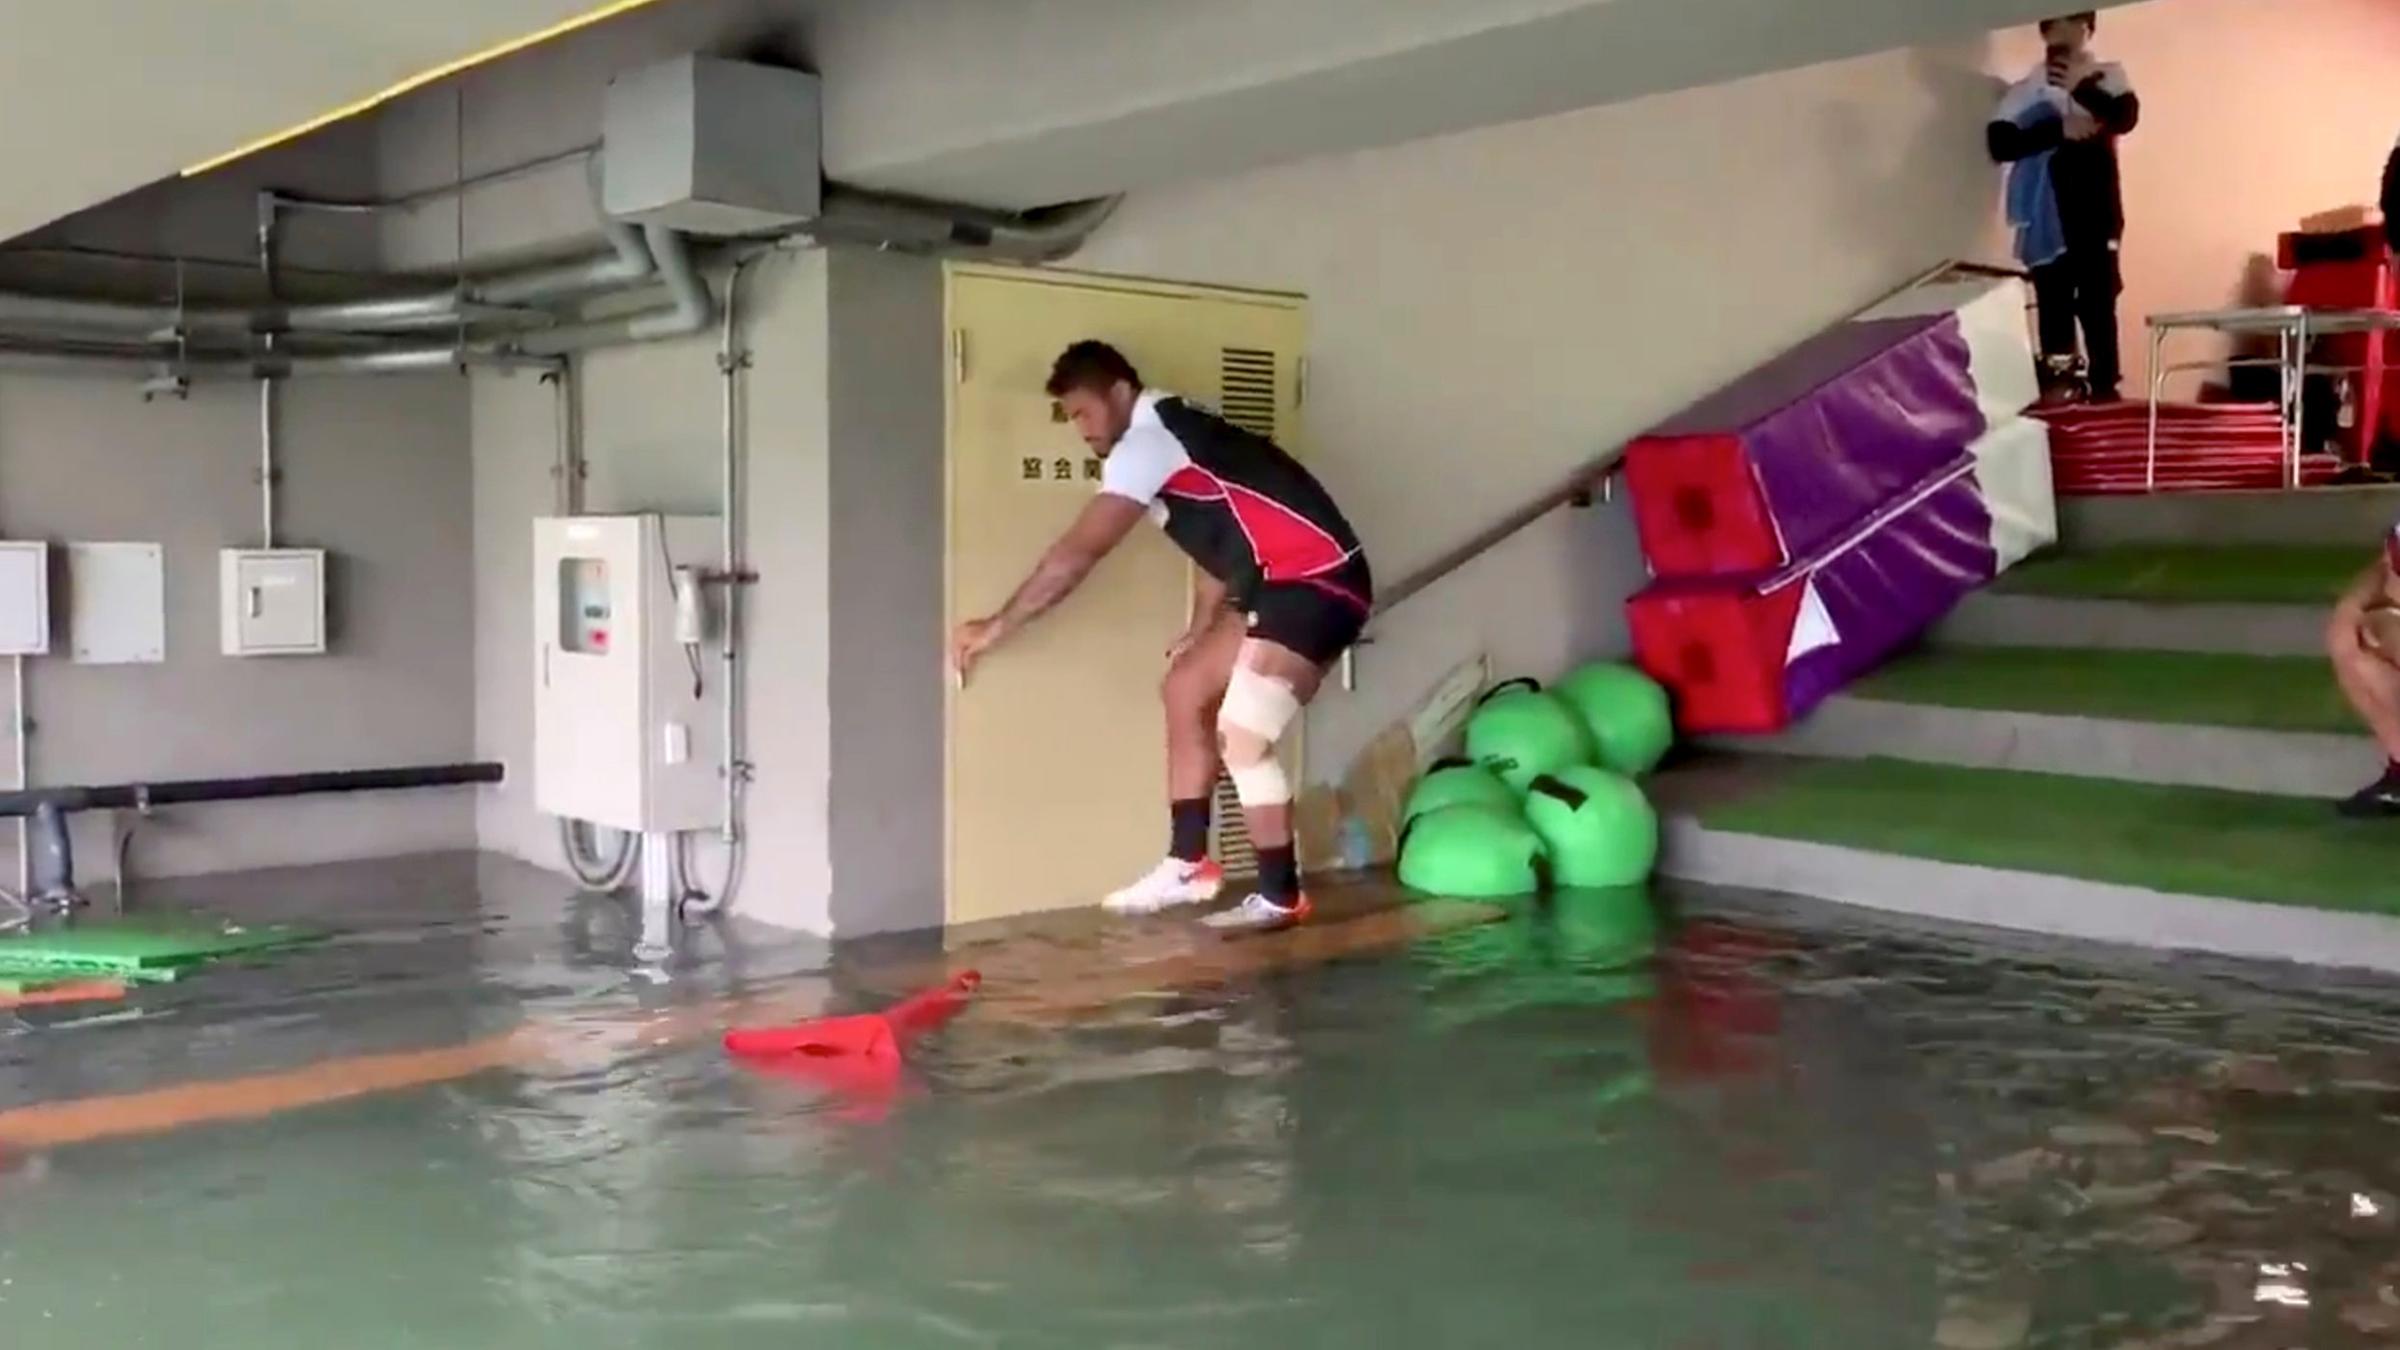 Ein Spieler des japanischen Rugby-Teams klettert über Tische, um trocken durch einen überfluteten Kabinengang zu kommen.